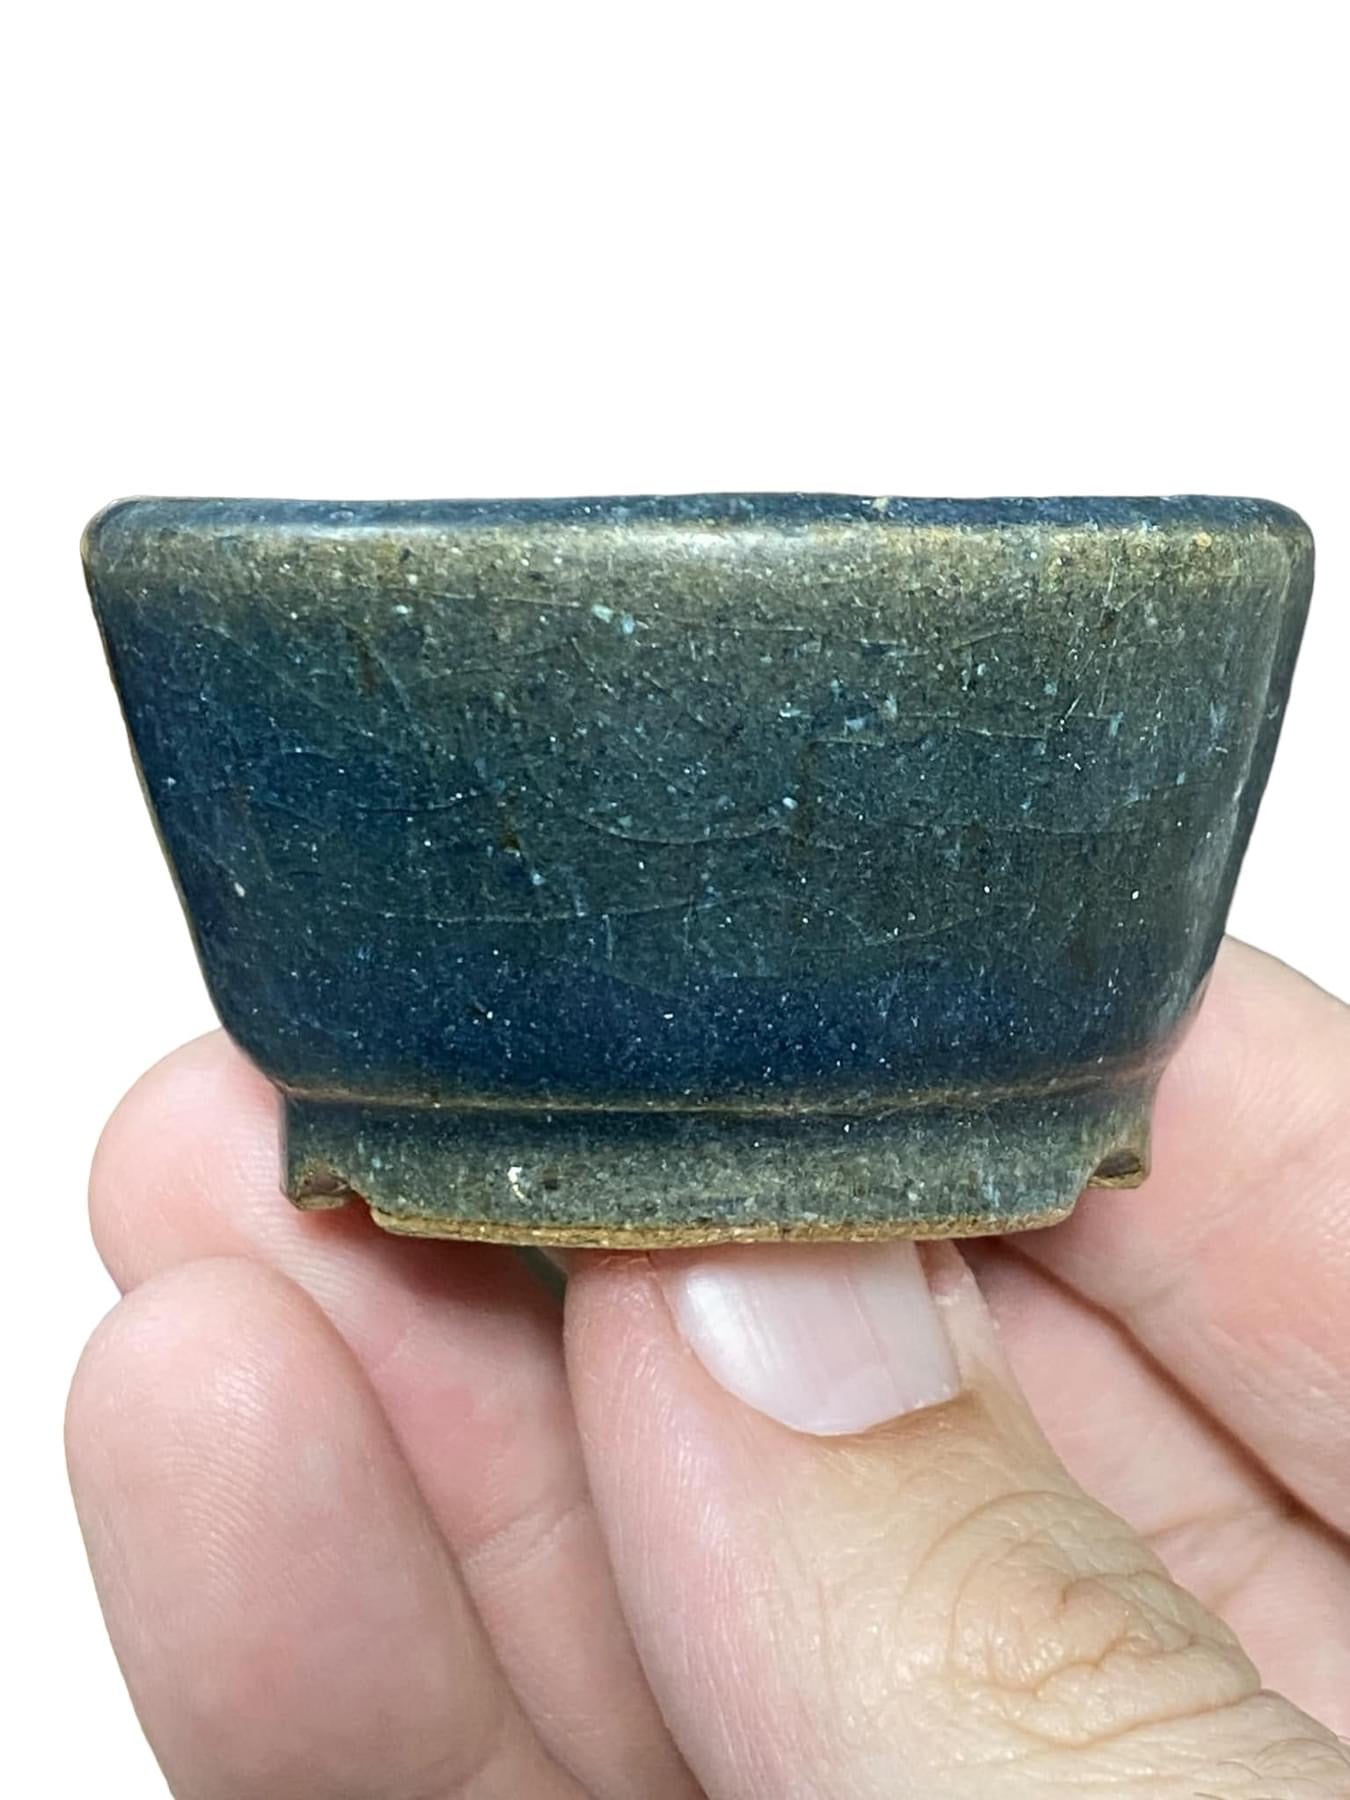 Sharaku - Mame Bonsai or Accent Bonsai Pot